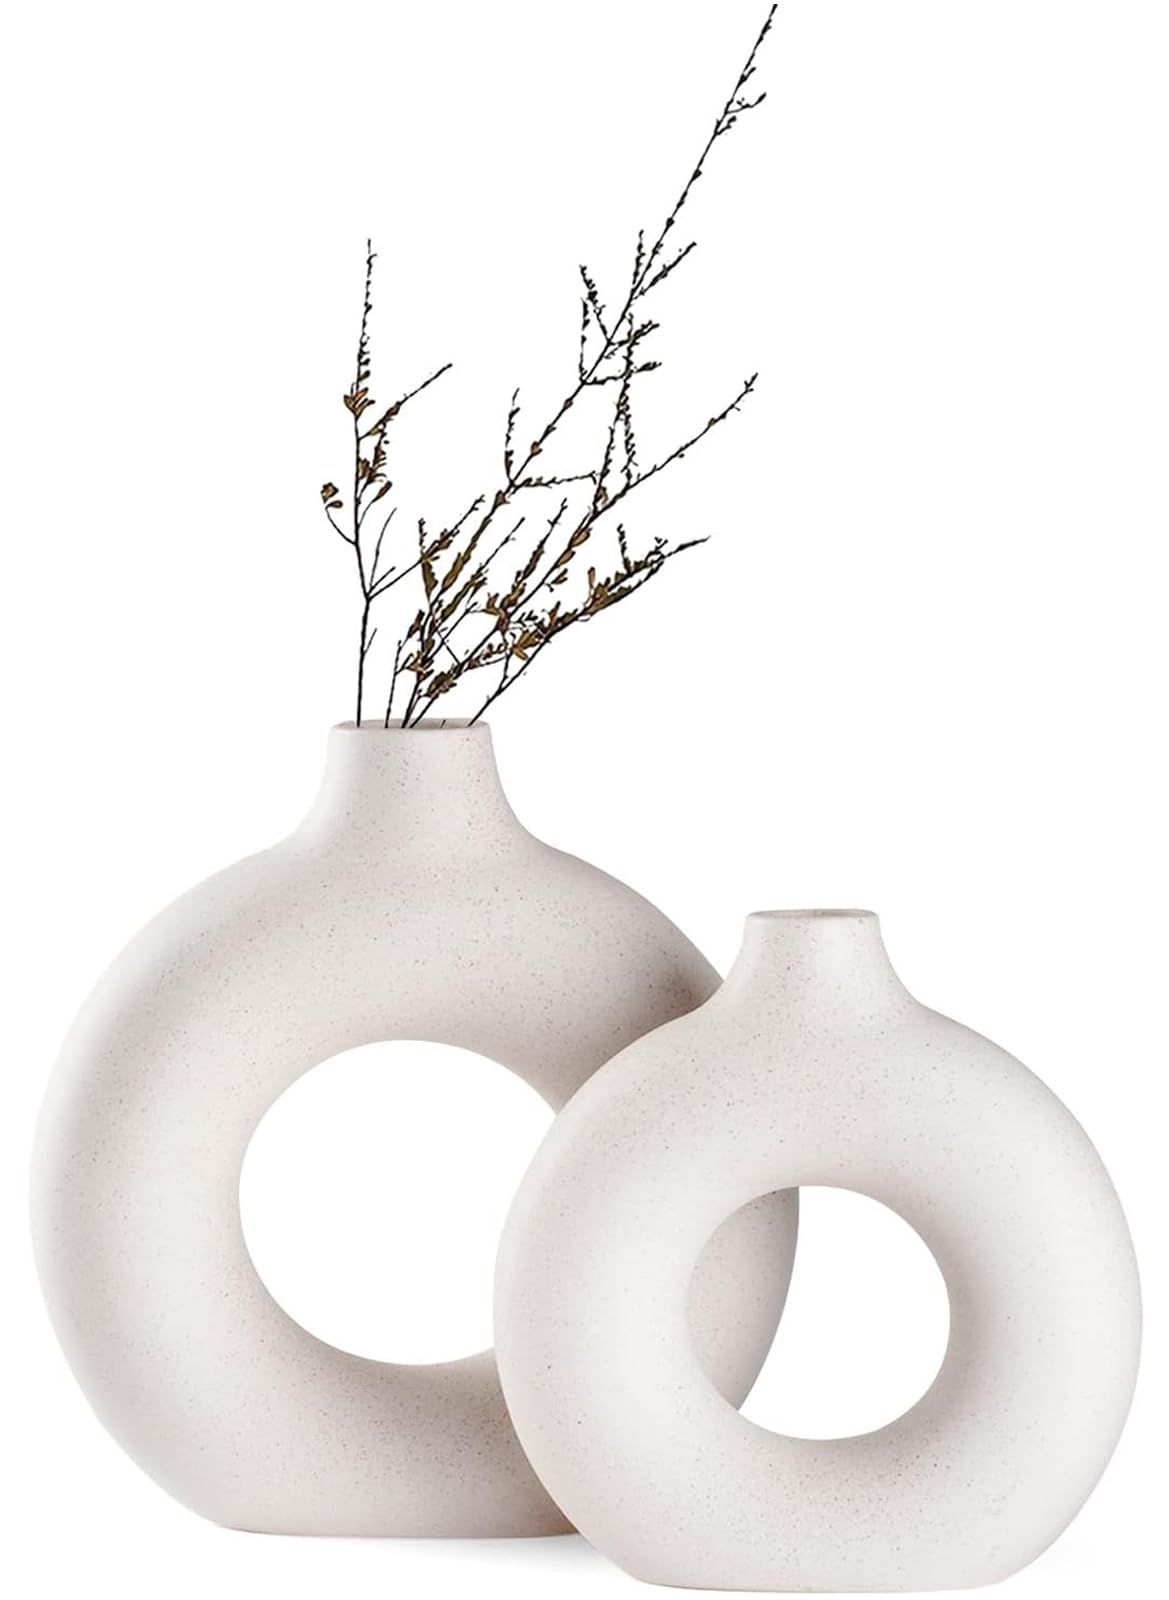 Ceramic Vases Set of 2,Modern Vases for Home Decor, White Boho Vases for Living Room Kitchen Mant... | Amazon (US)